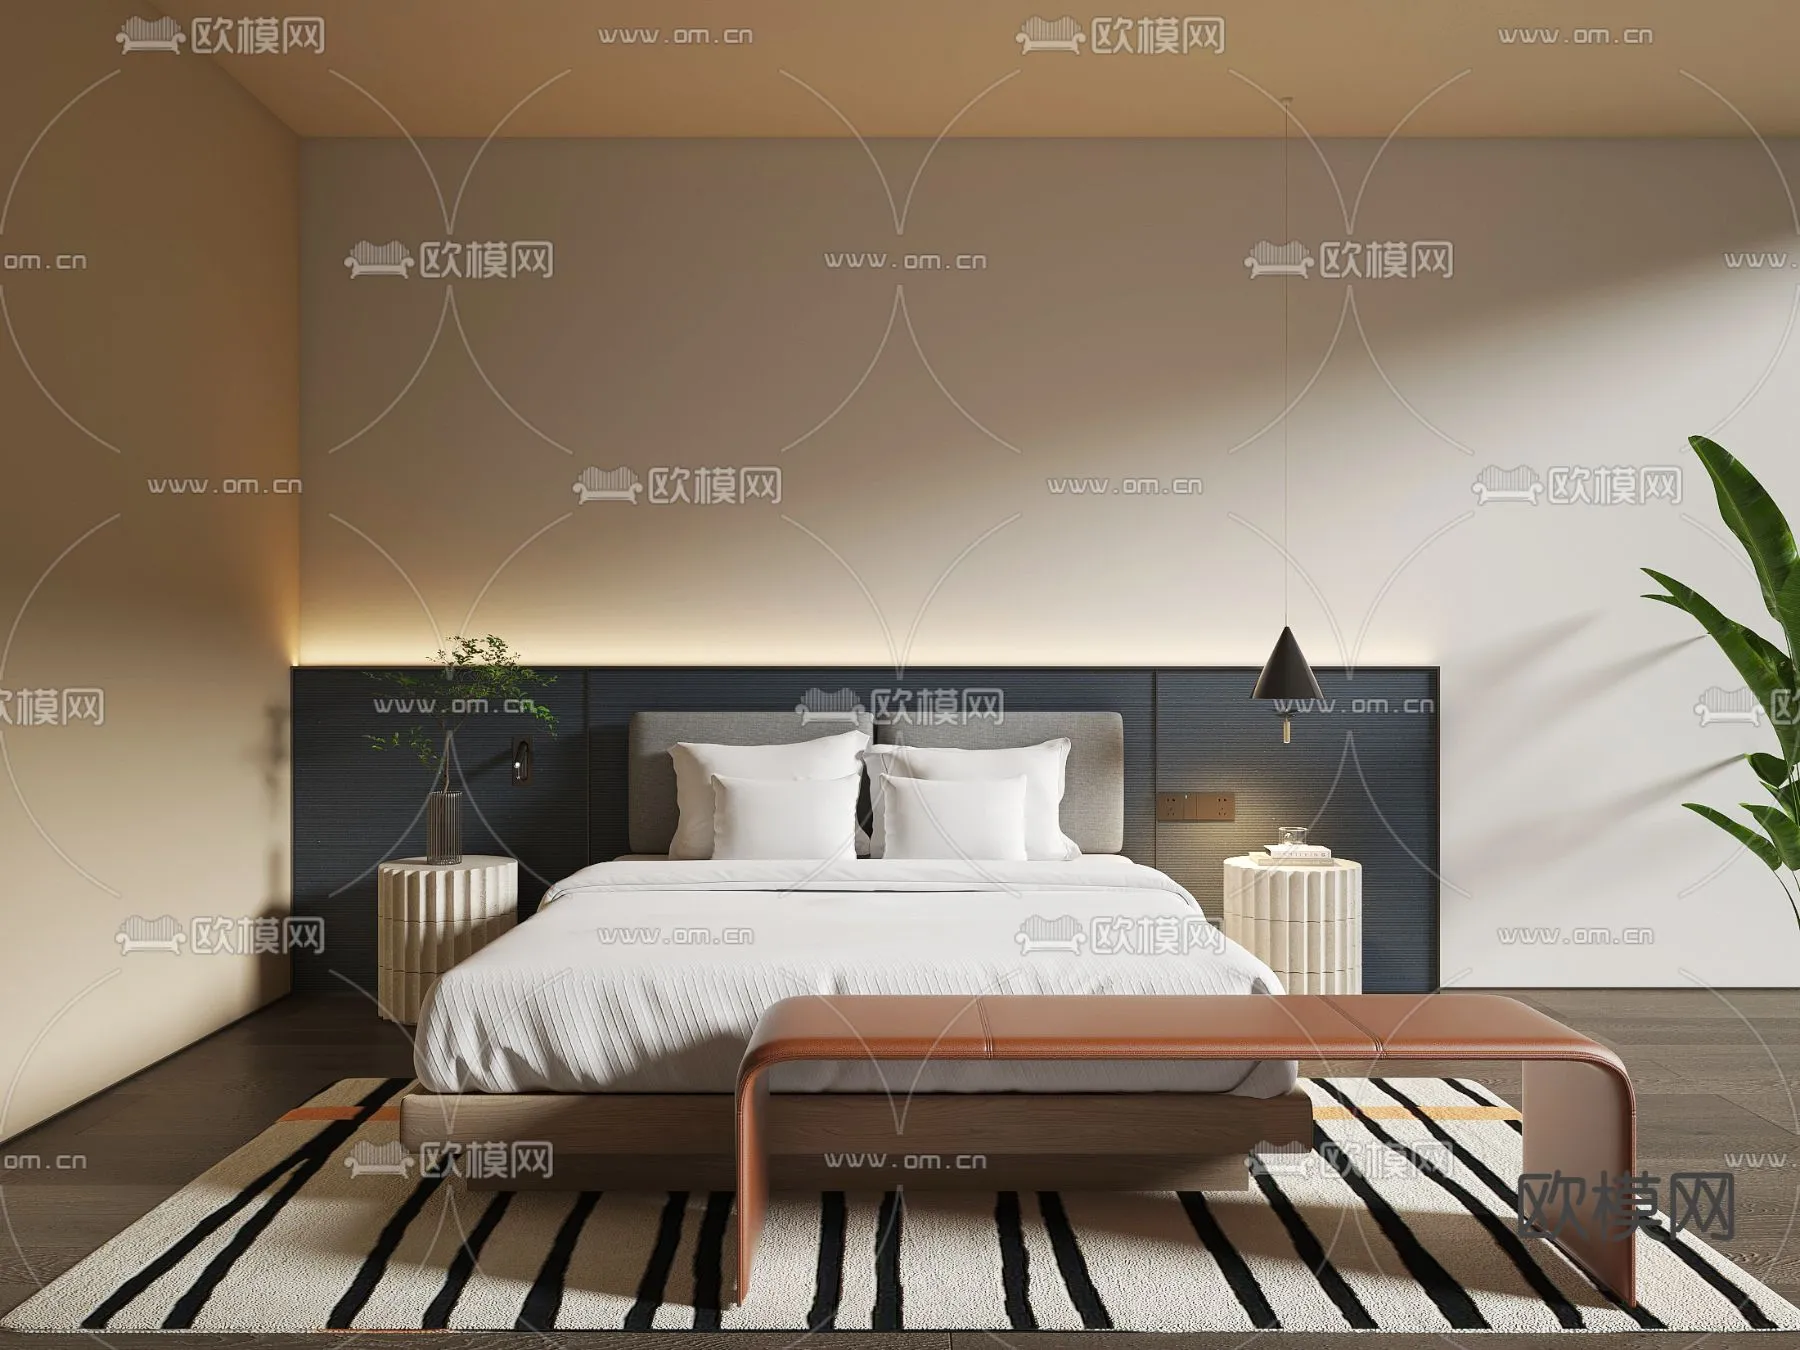 Hotel Room – Bedroom For Hotel 3D Models – 009